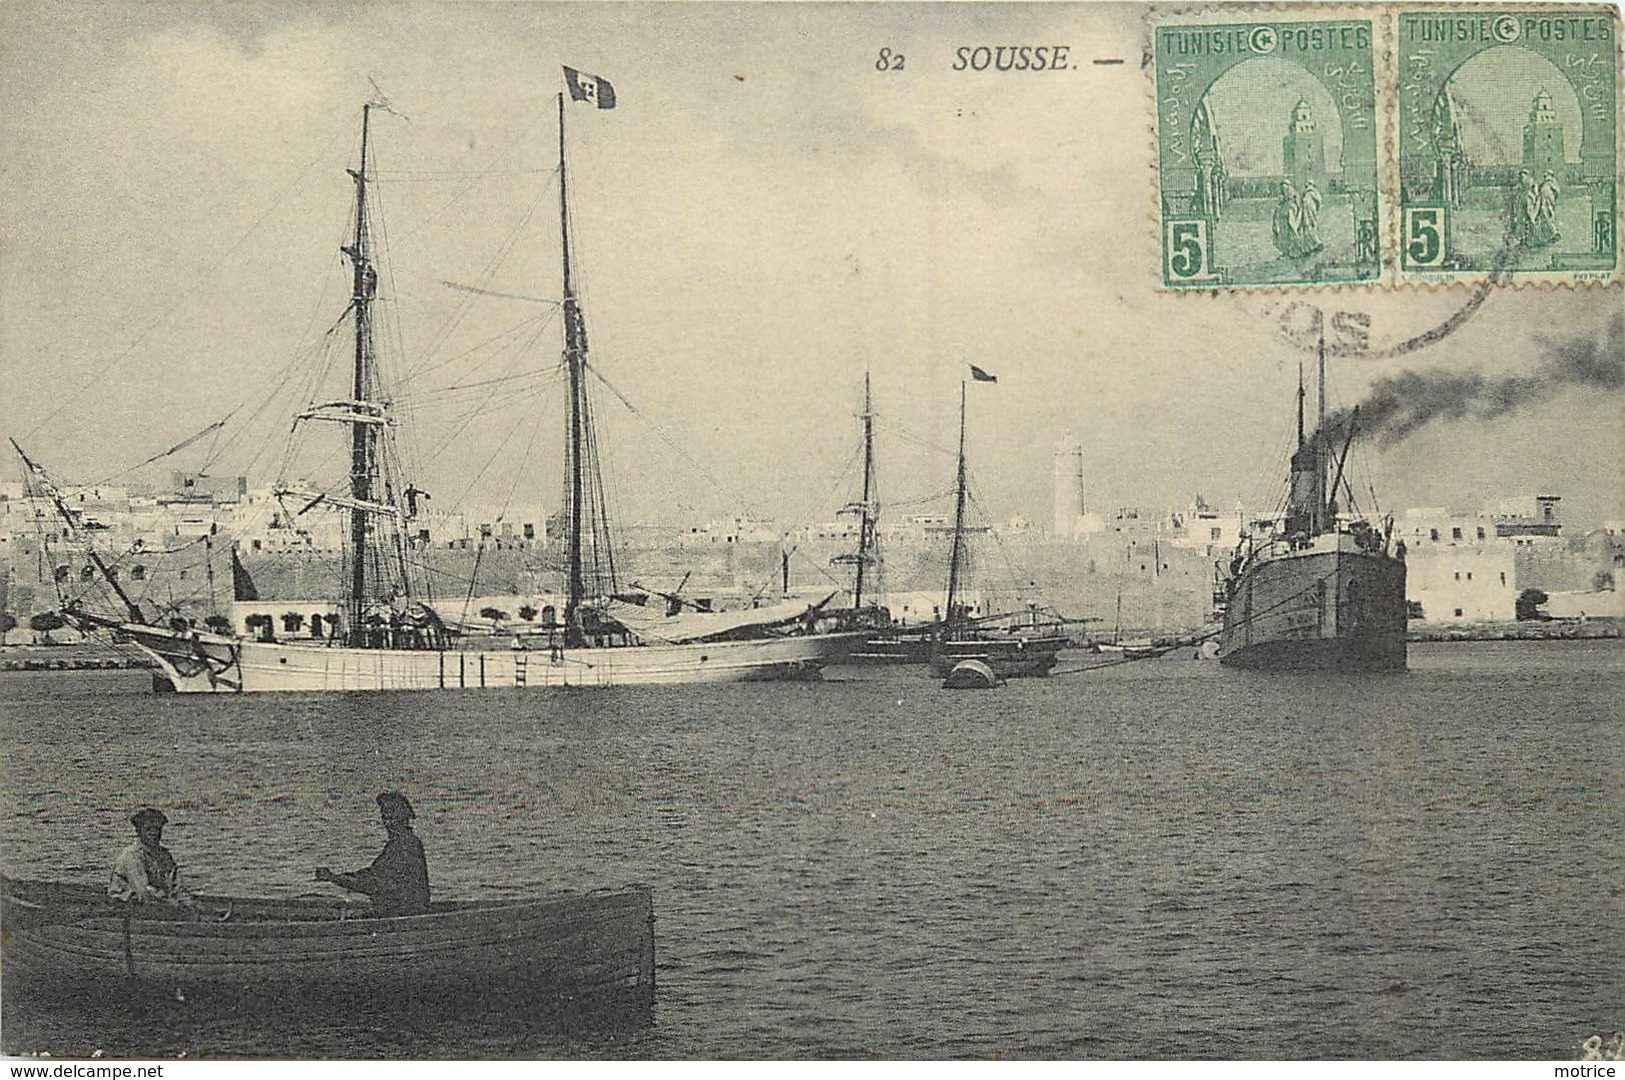 SOUSSE - Le Port, Voilier. - Segelboote